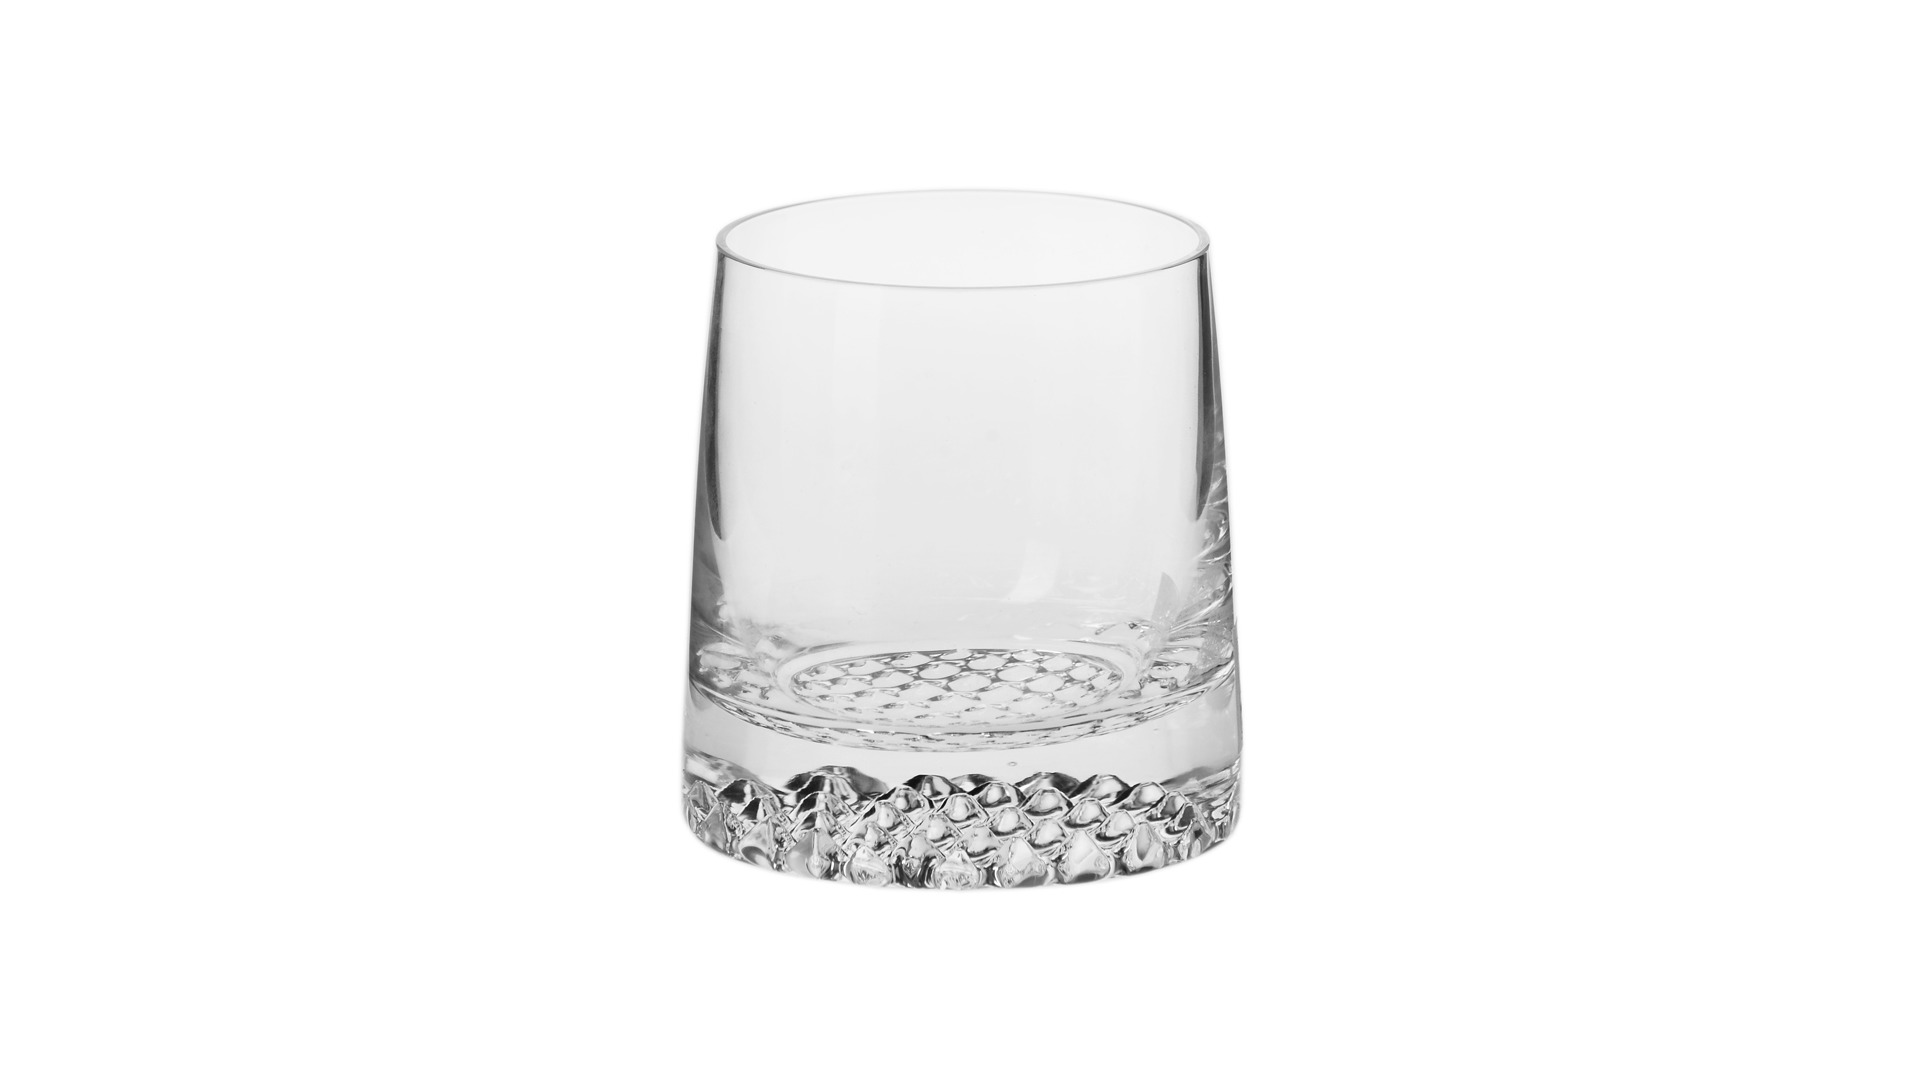 Набор графин и стаканы для виски Krosno Фьорд 7 предметов, 950 мл, 300 мл, п/к